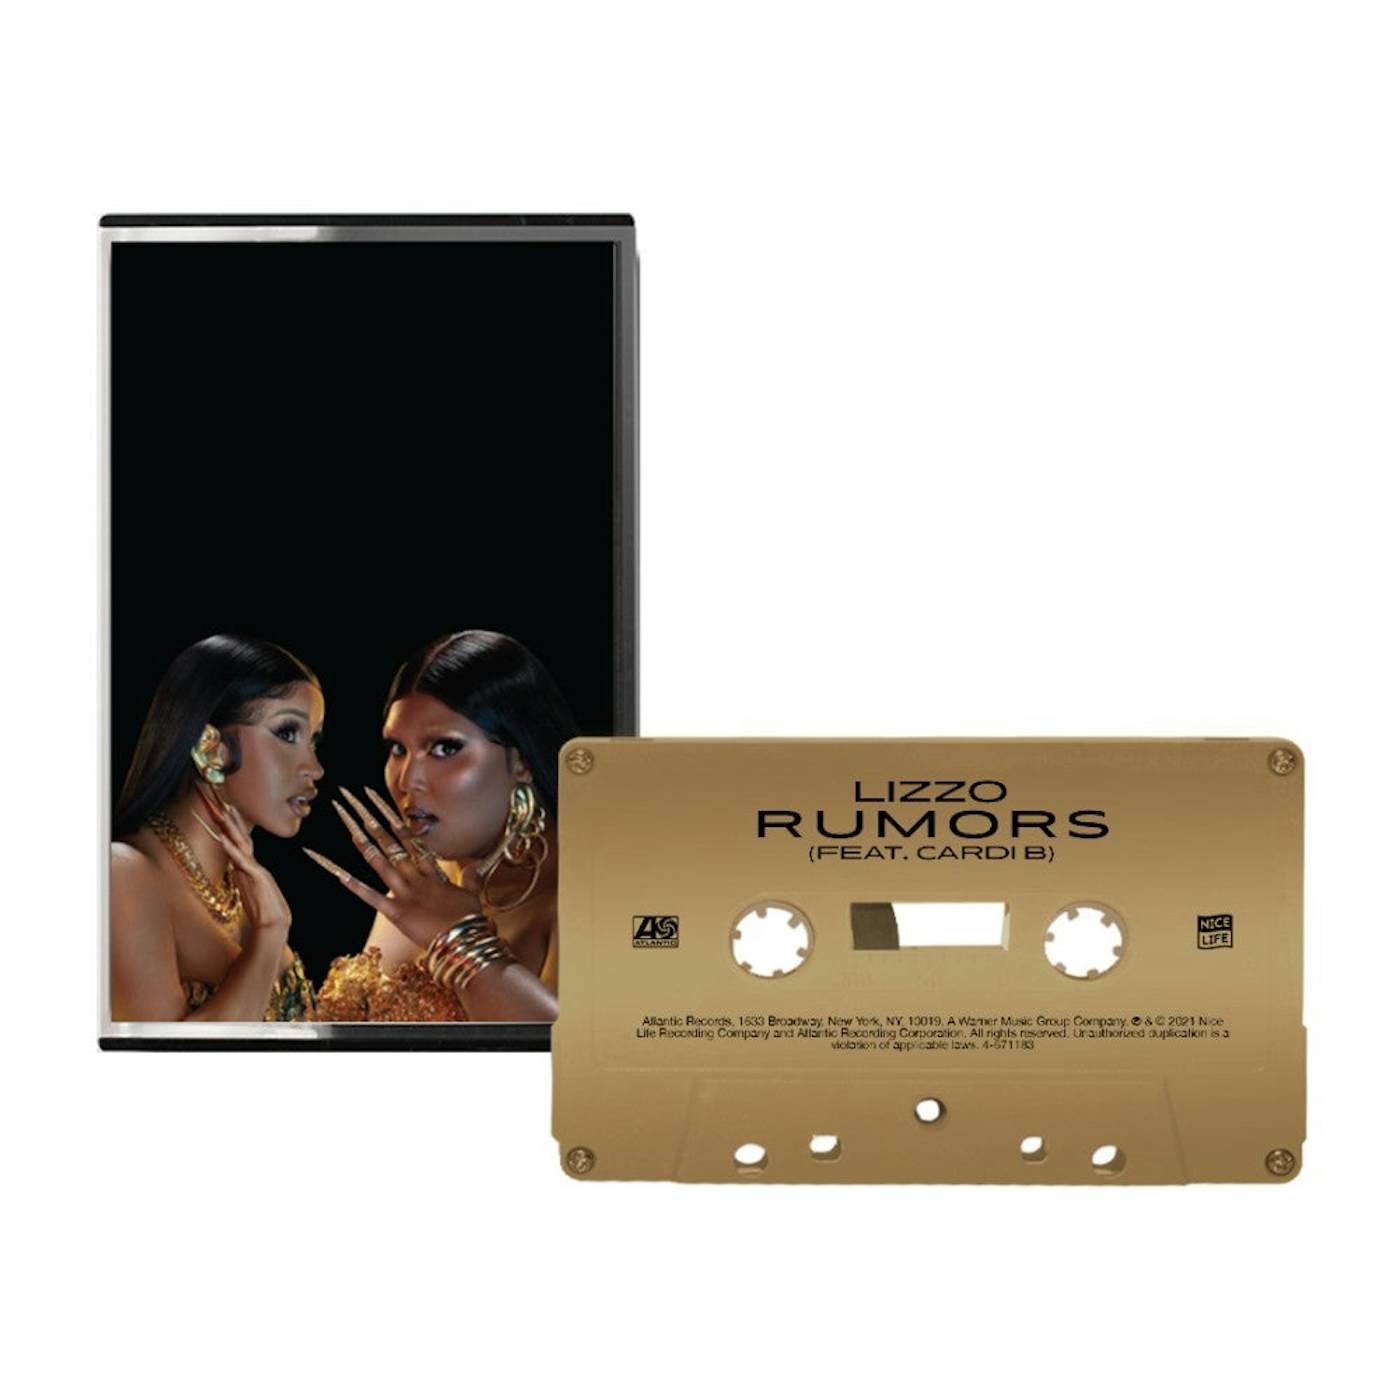 Lizzo Rumors Gold Cassette